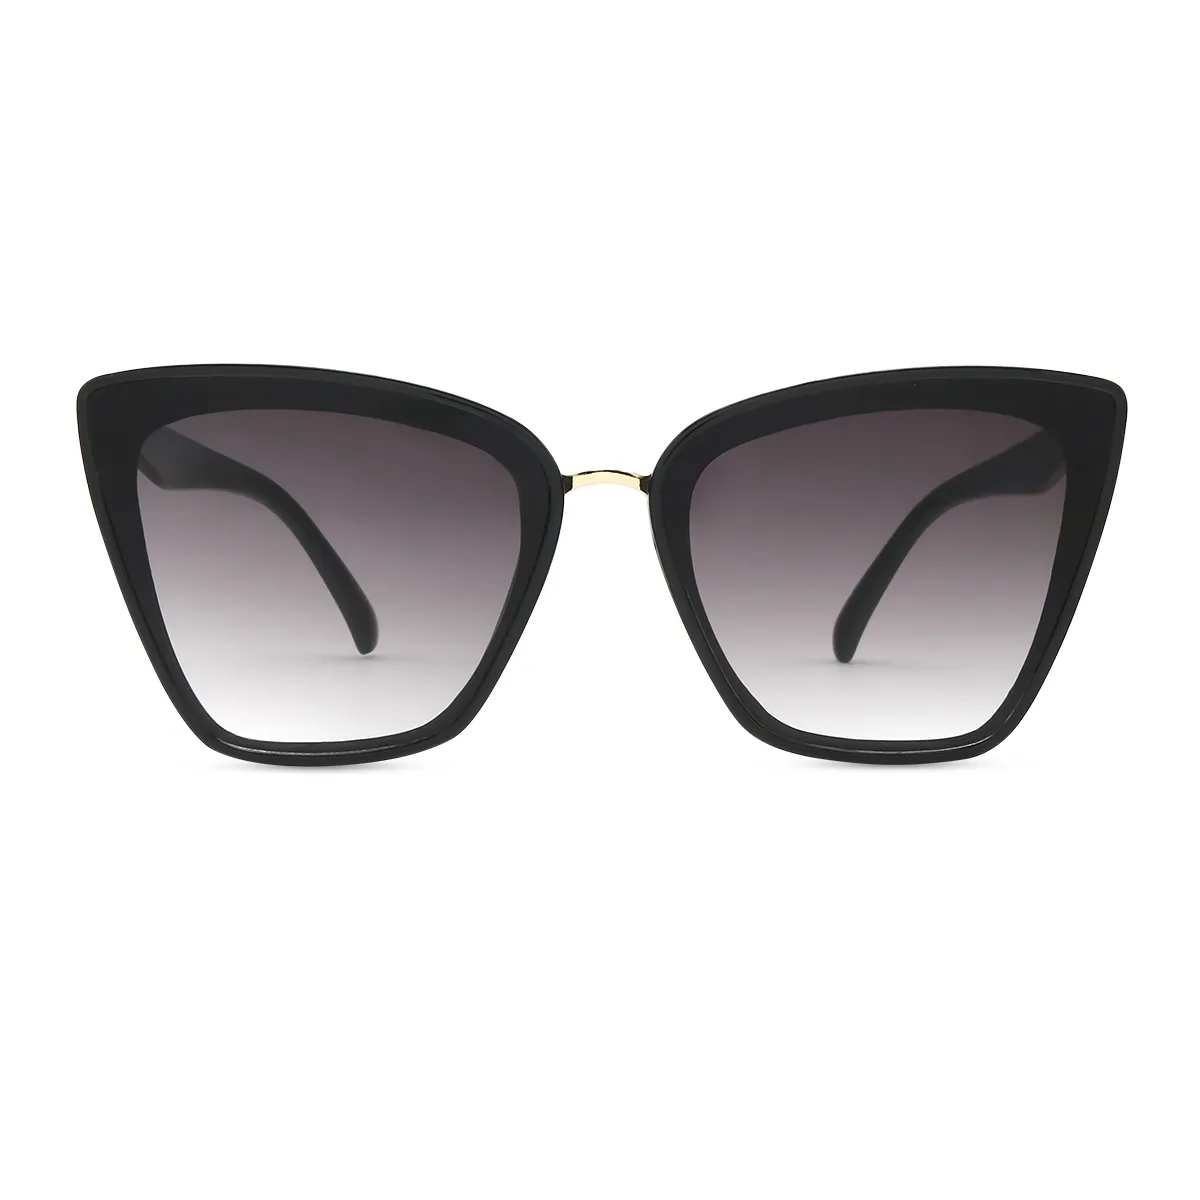 Polly - Cat-Eye Black Sunglasses for Women